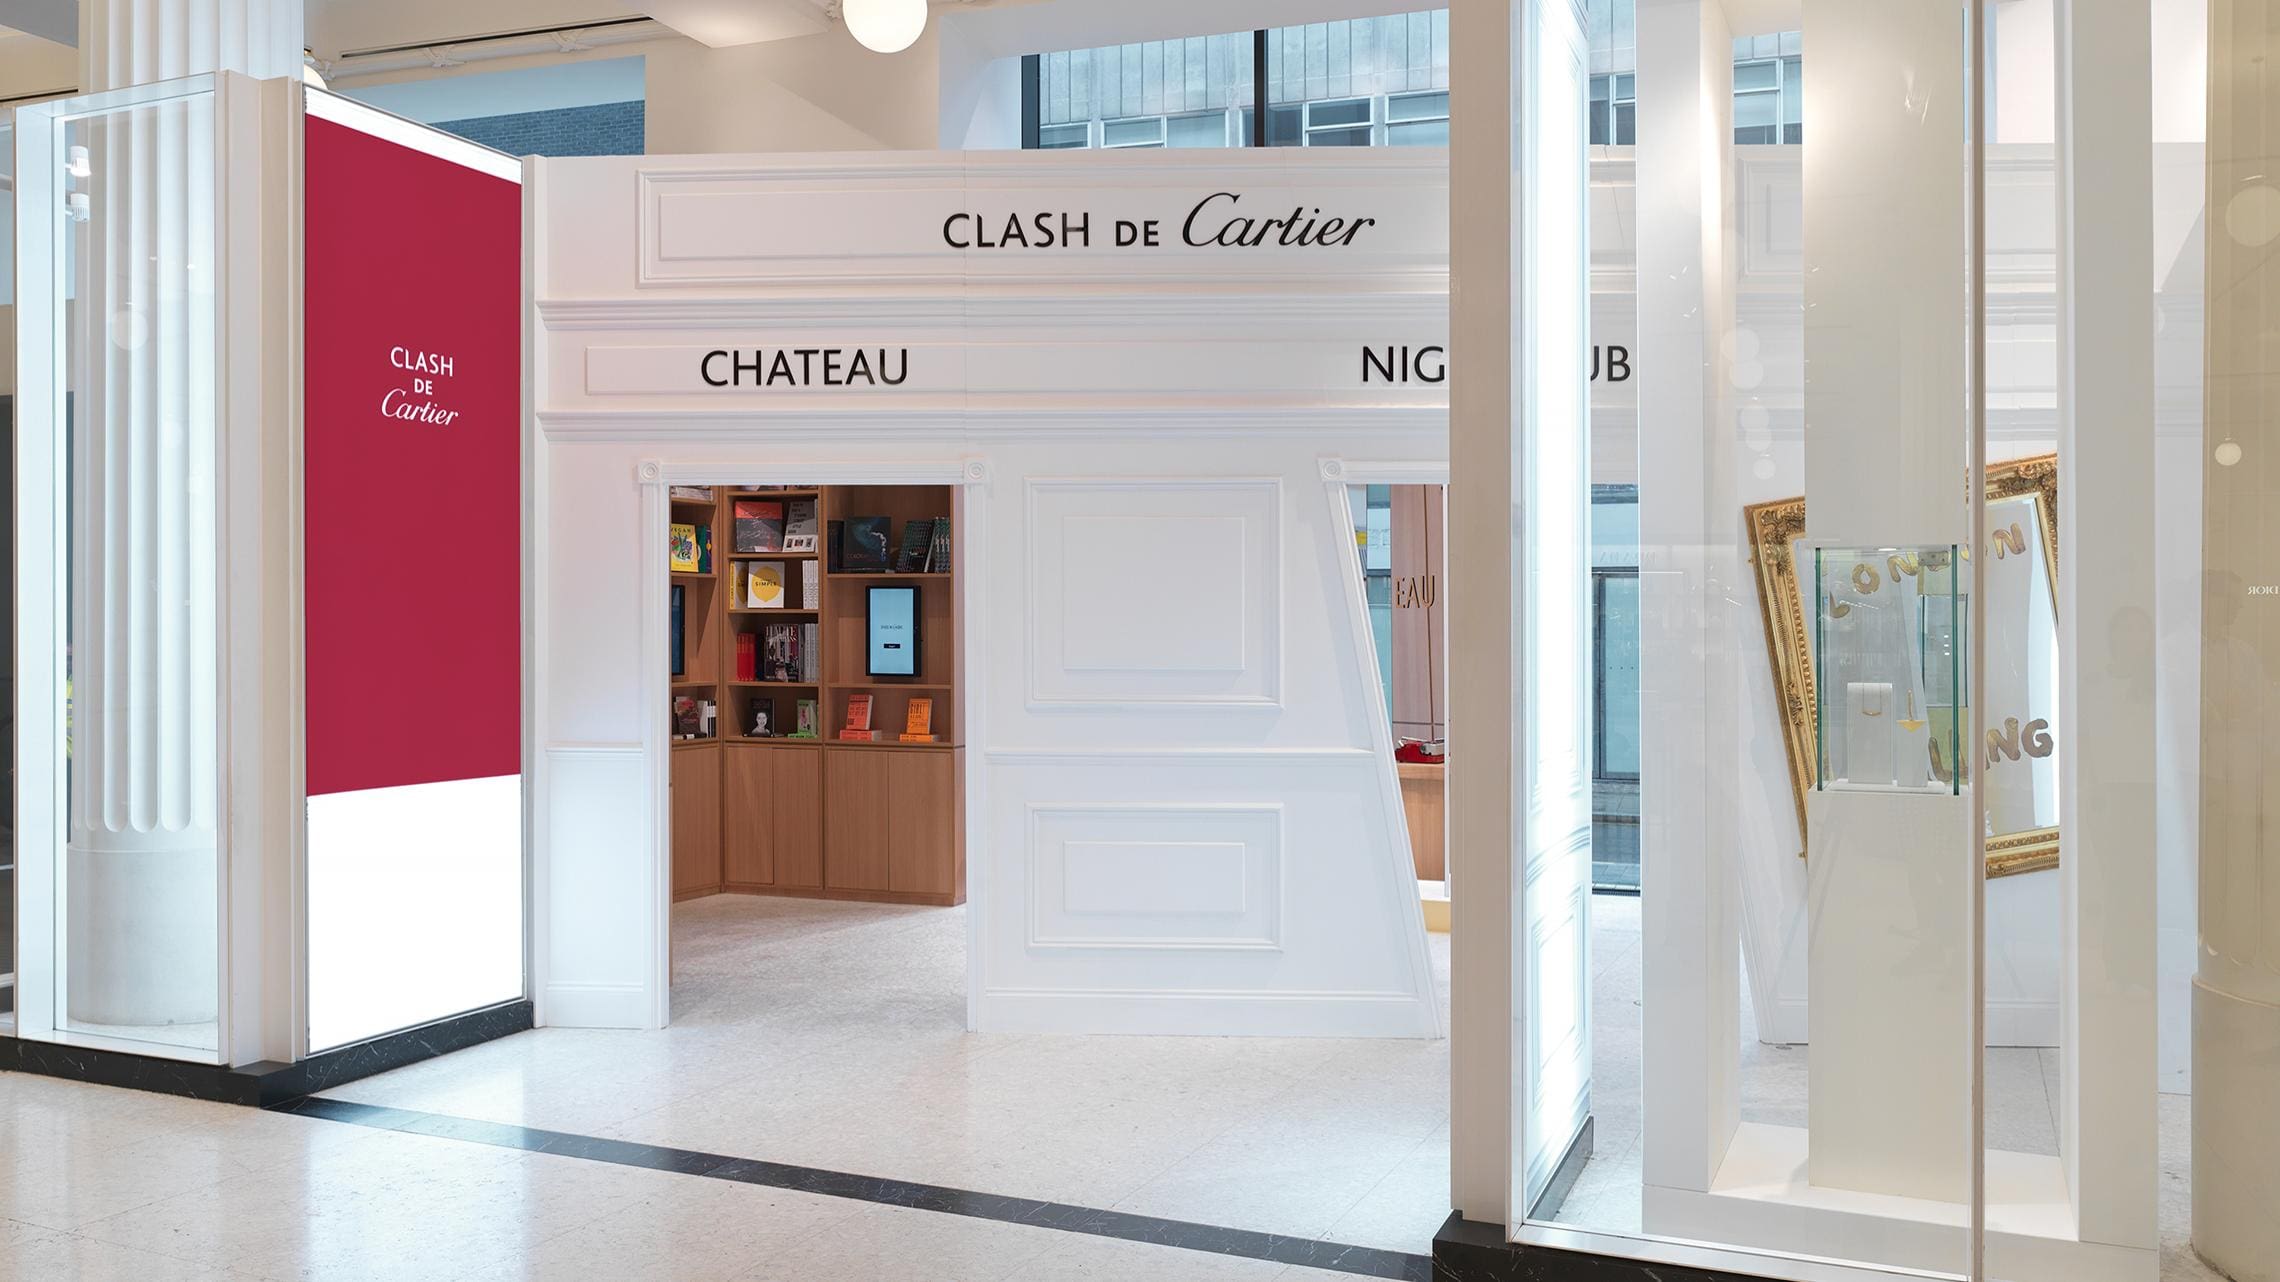 British Display Society - Clash de Cartier Pop Up shop located in